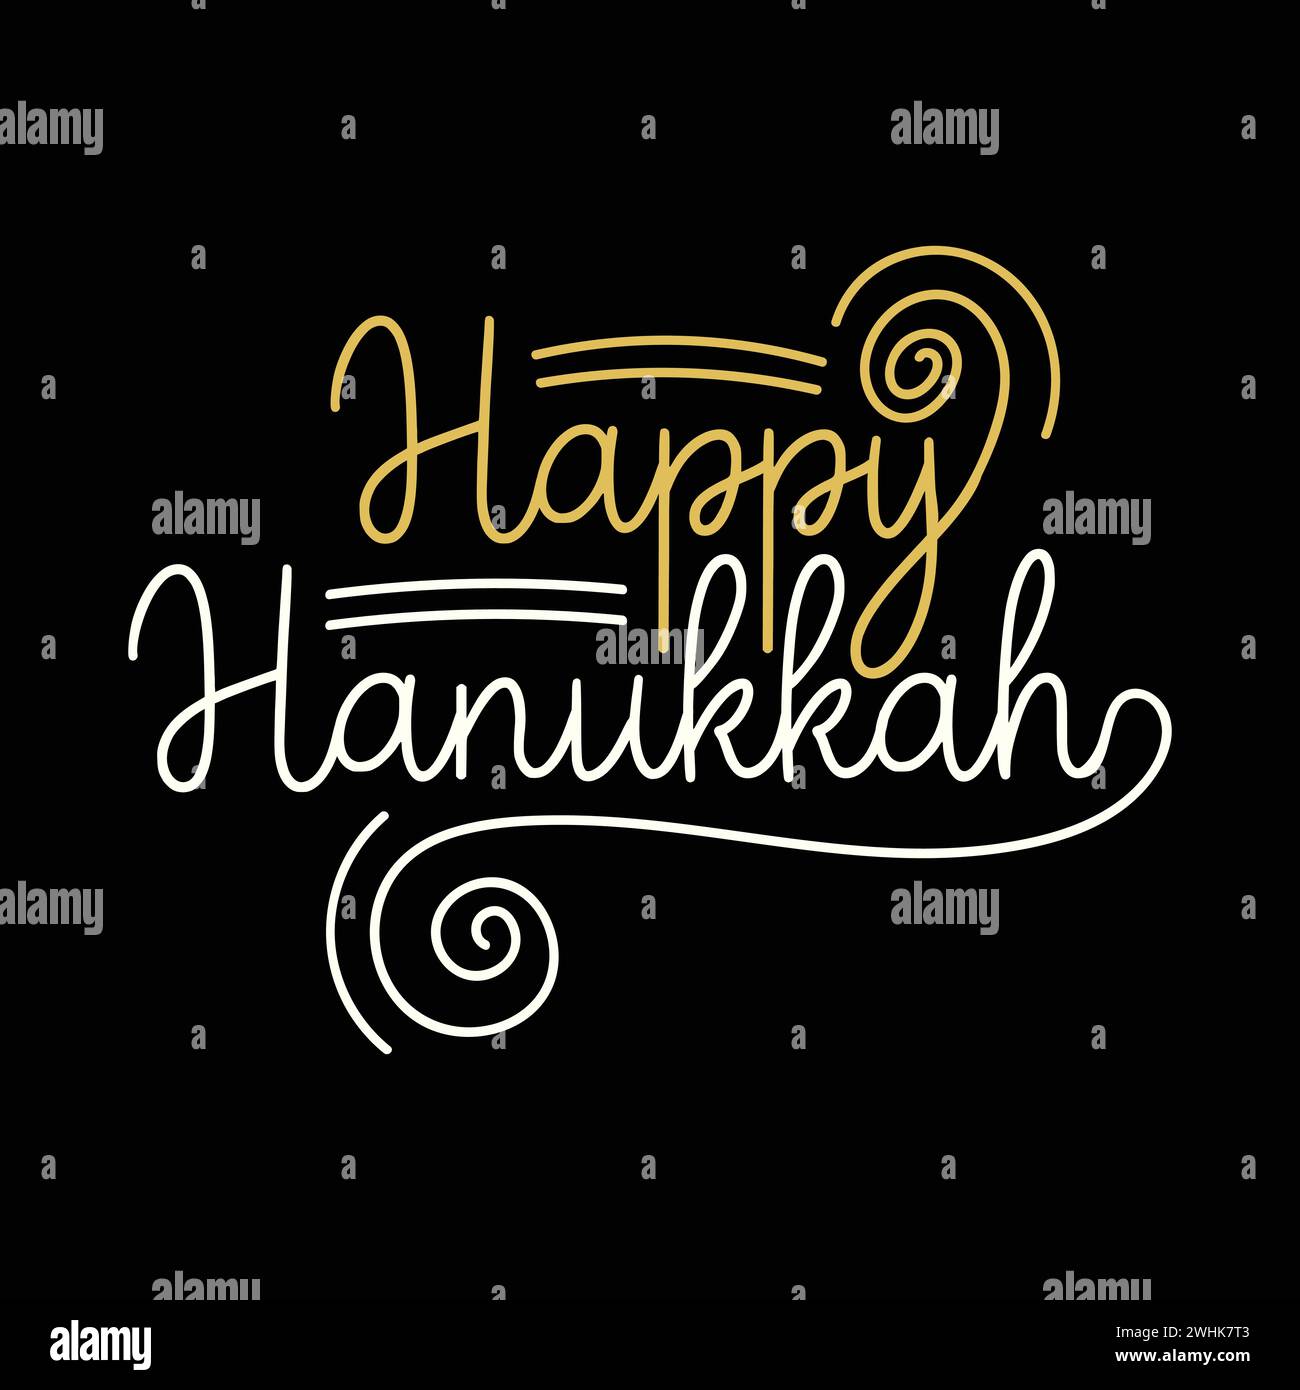 Glückliche Hanukkah freie Hand gezeichnete Buchstaben-Illustration auf schwarzem Hintergrund. Hanukkah eleganter und dekorativer Text für Banner, Poster, Grußkarte Stock Vektor